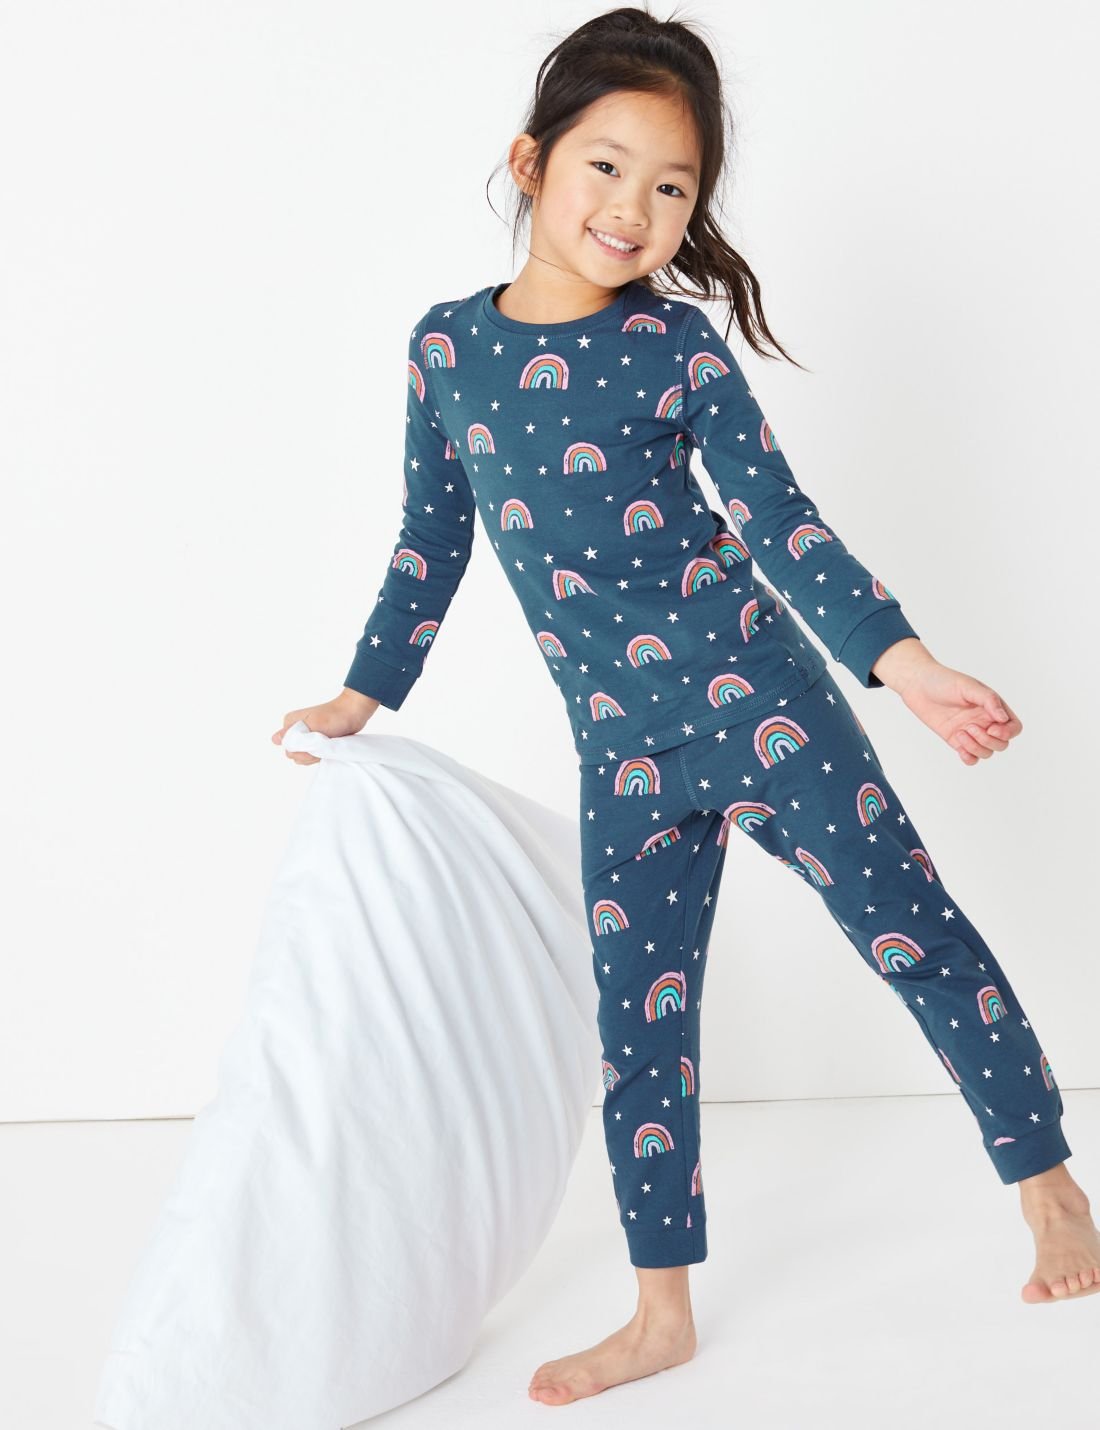 Gökkuşağı Desenli Pijama Takımı